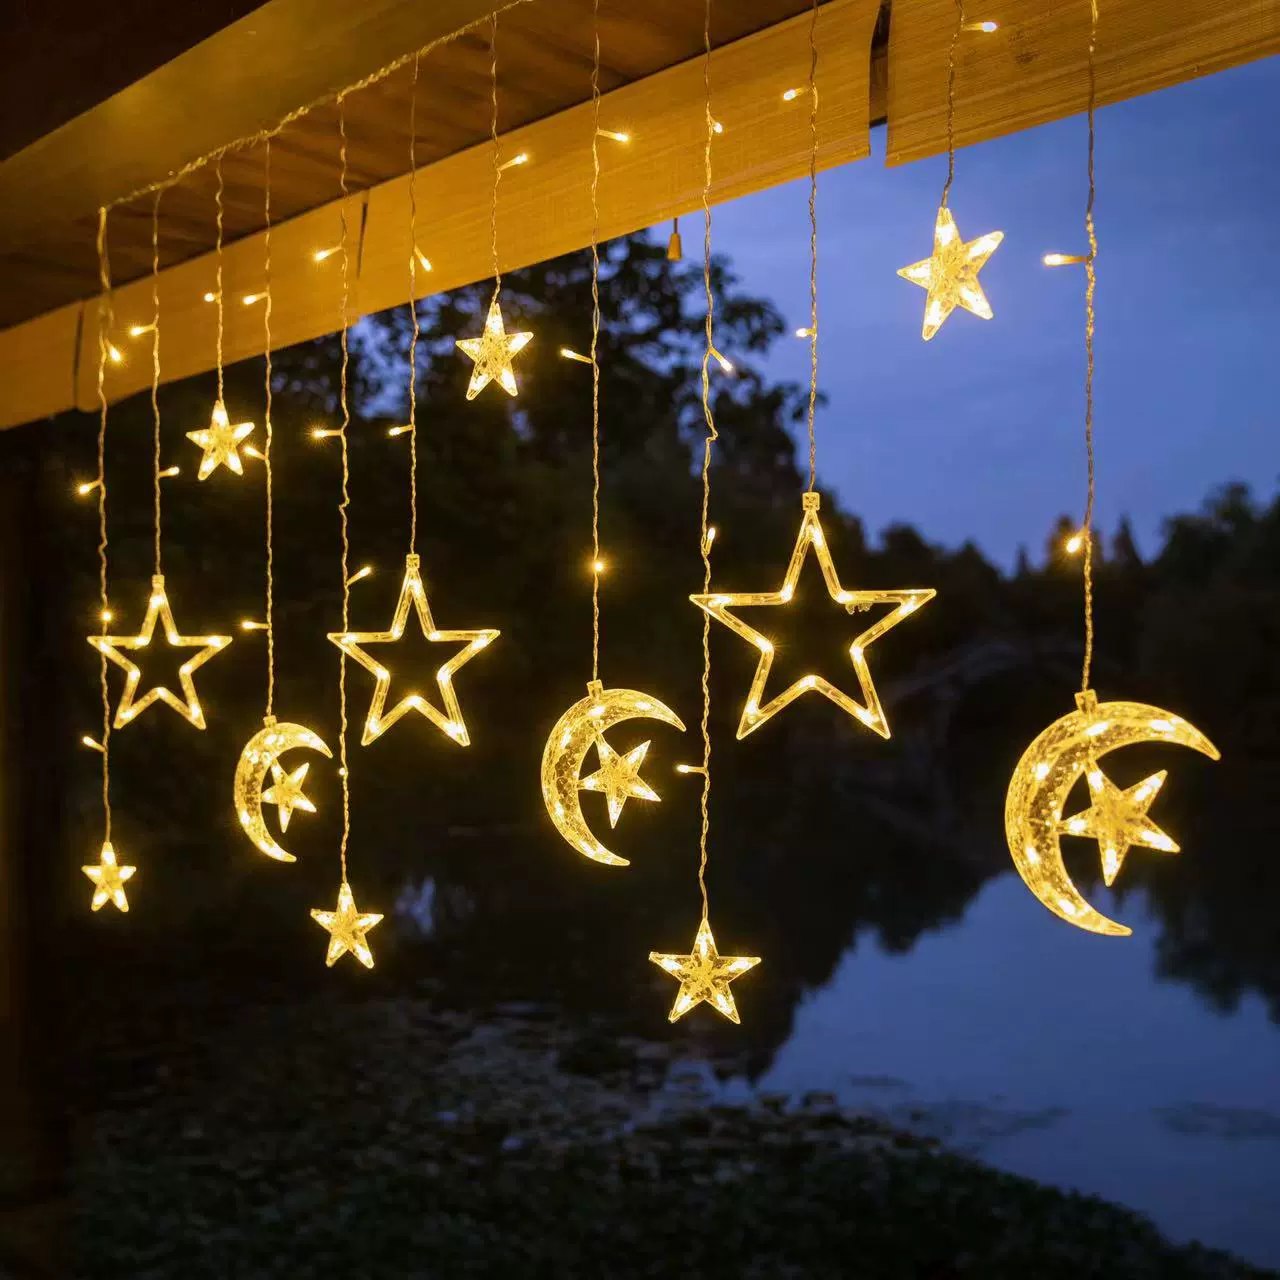 Đèn LED hình ngôi sao cắm trại không khí đèn nhỏ nhiều màu sắc đèn dây nhấp nháy bầu trời đầy sao trang trí phòng ngủ bố cục cảnh sinh nhật Đèn led trang trí